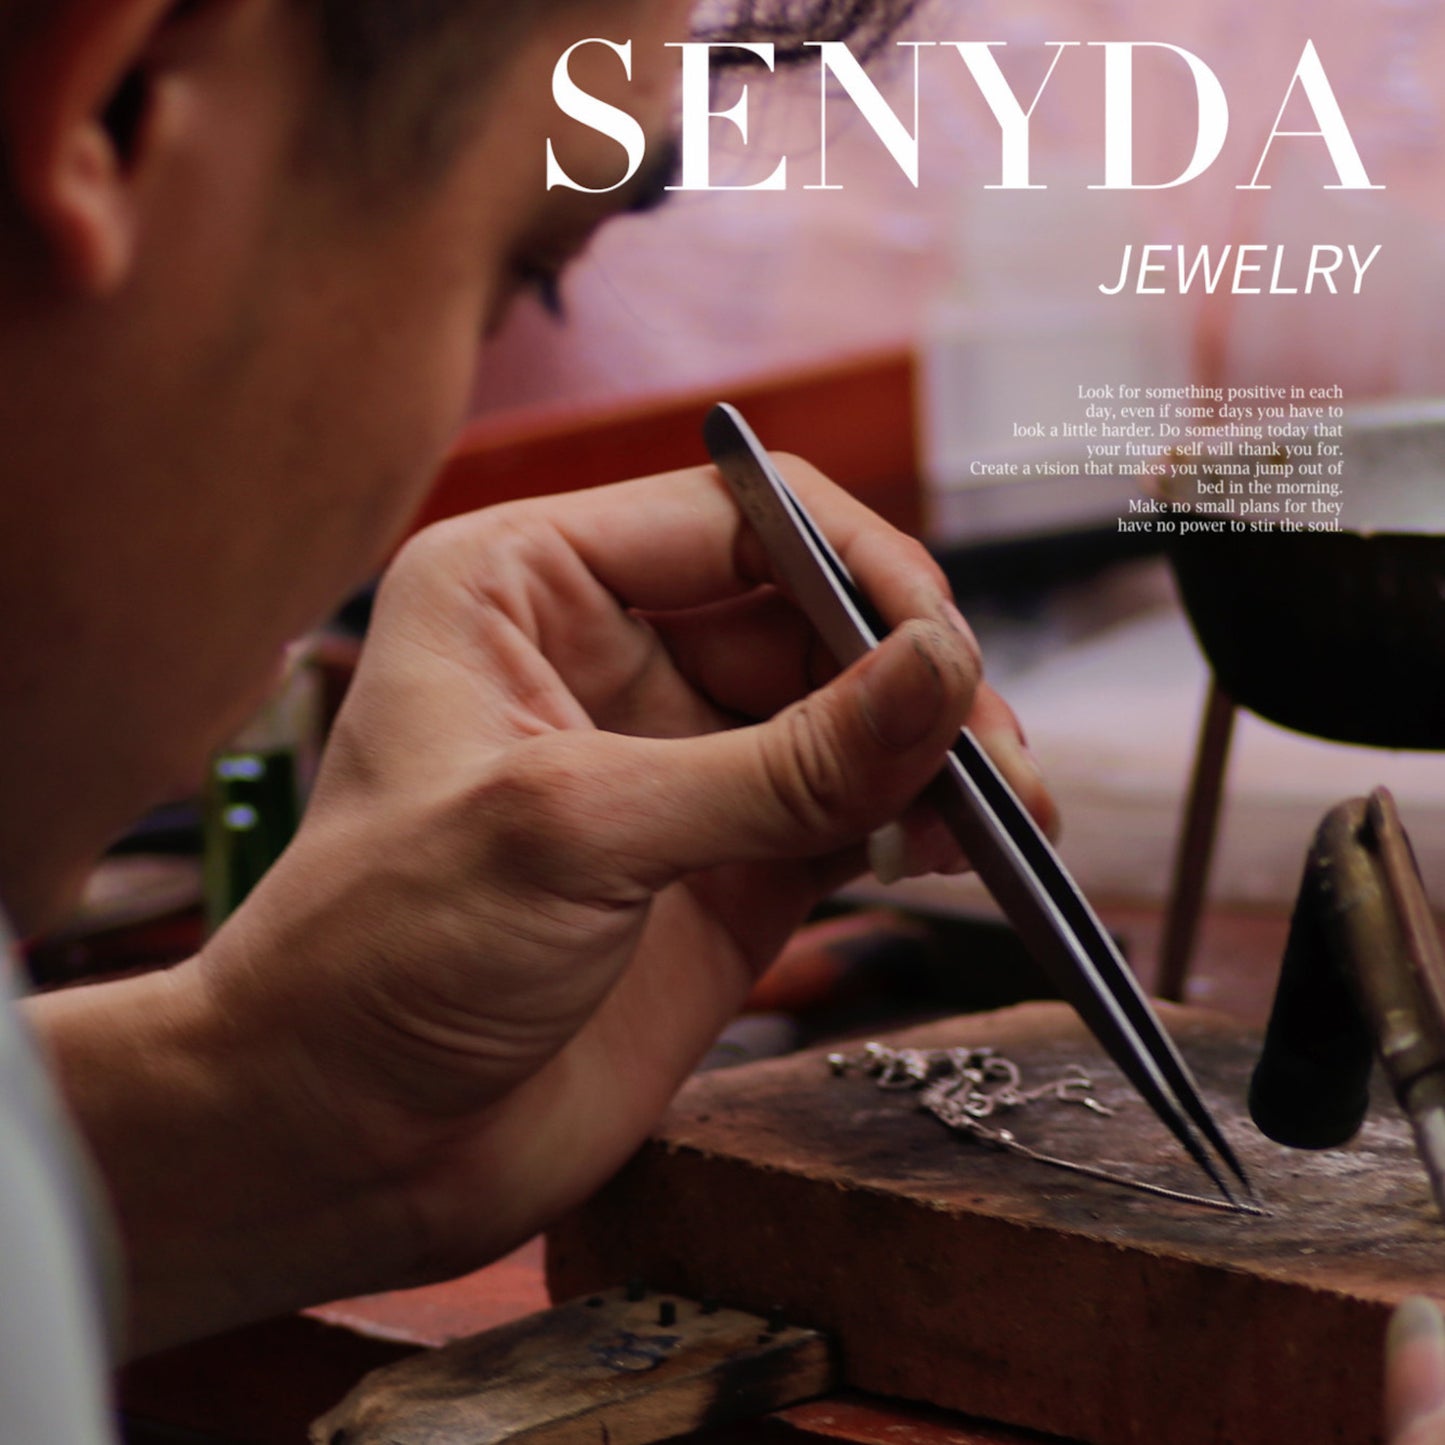 Senyda 10K Solid Gold Natural Pearl Dangle Earrings